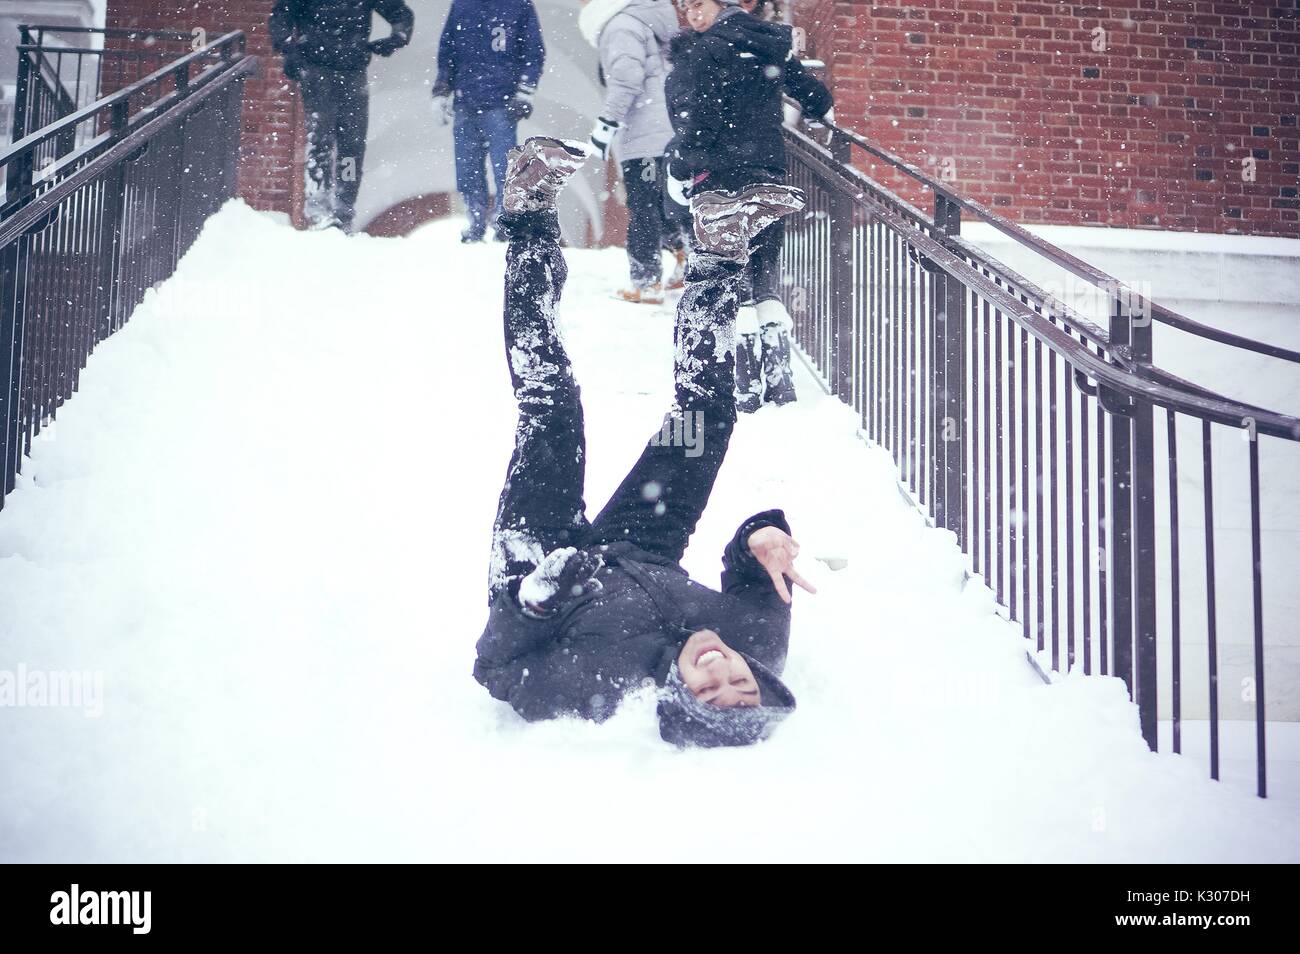 Ein Student sitzt im Schnee mit Beinen in der Luft nach unten schieben die verschneite Treppe, während andere Studenten im Schnee Gang stehen an der Spitze der Treppe gekleidet, auf einem Snow Day an der Johns Hopkins University, Baltimore, Maryland, 2016. Stockfoto